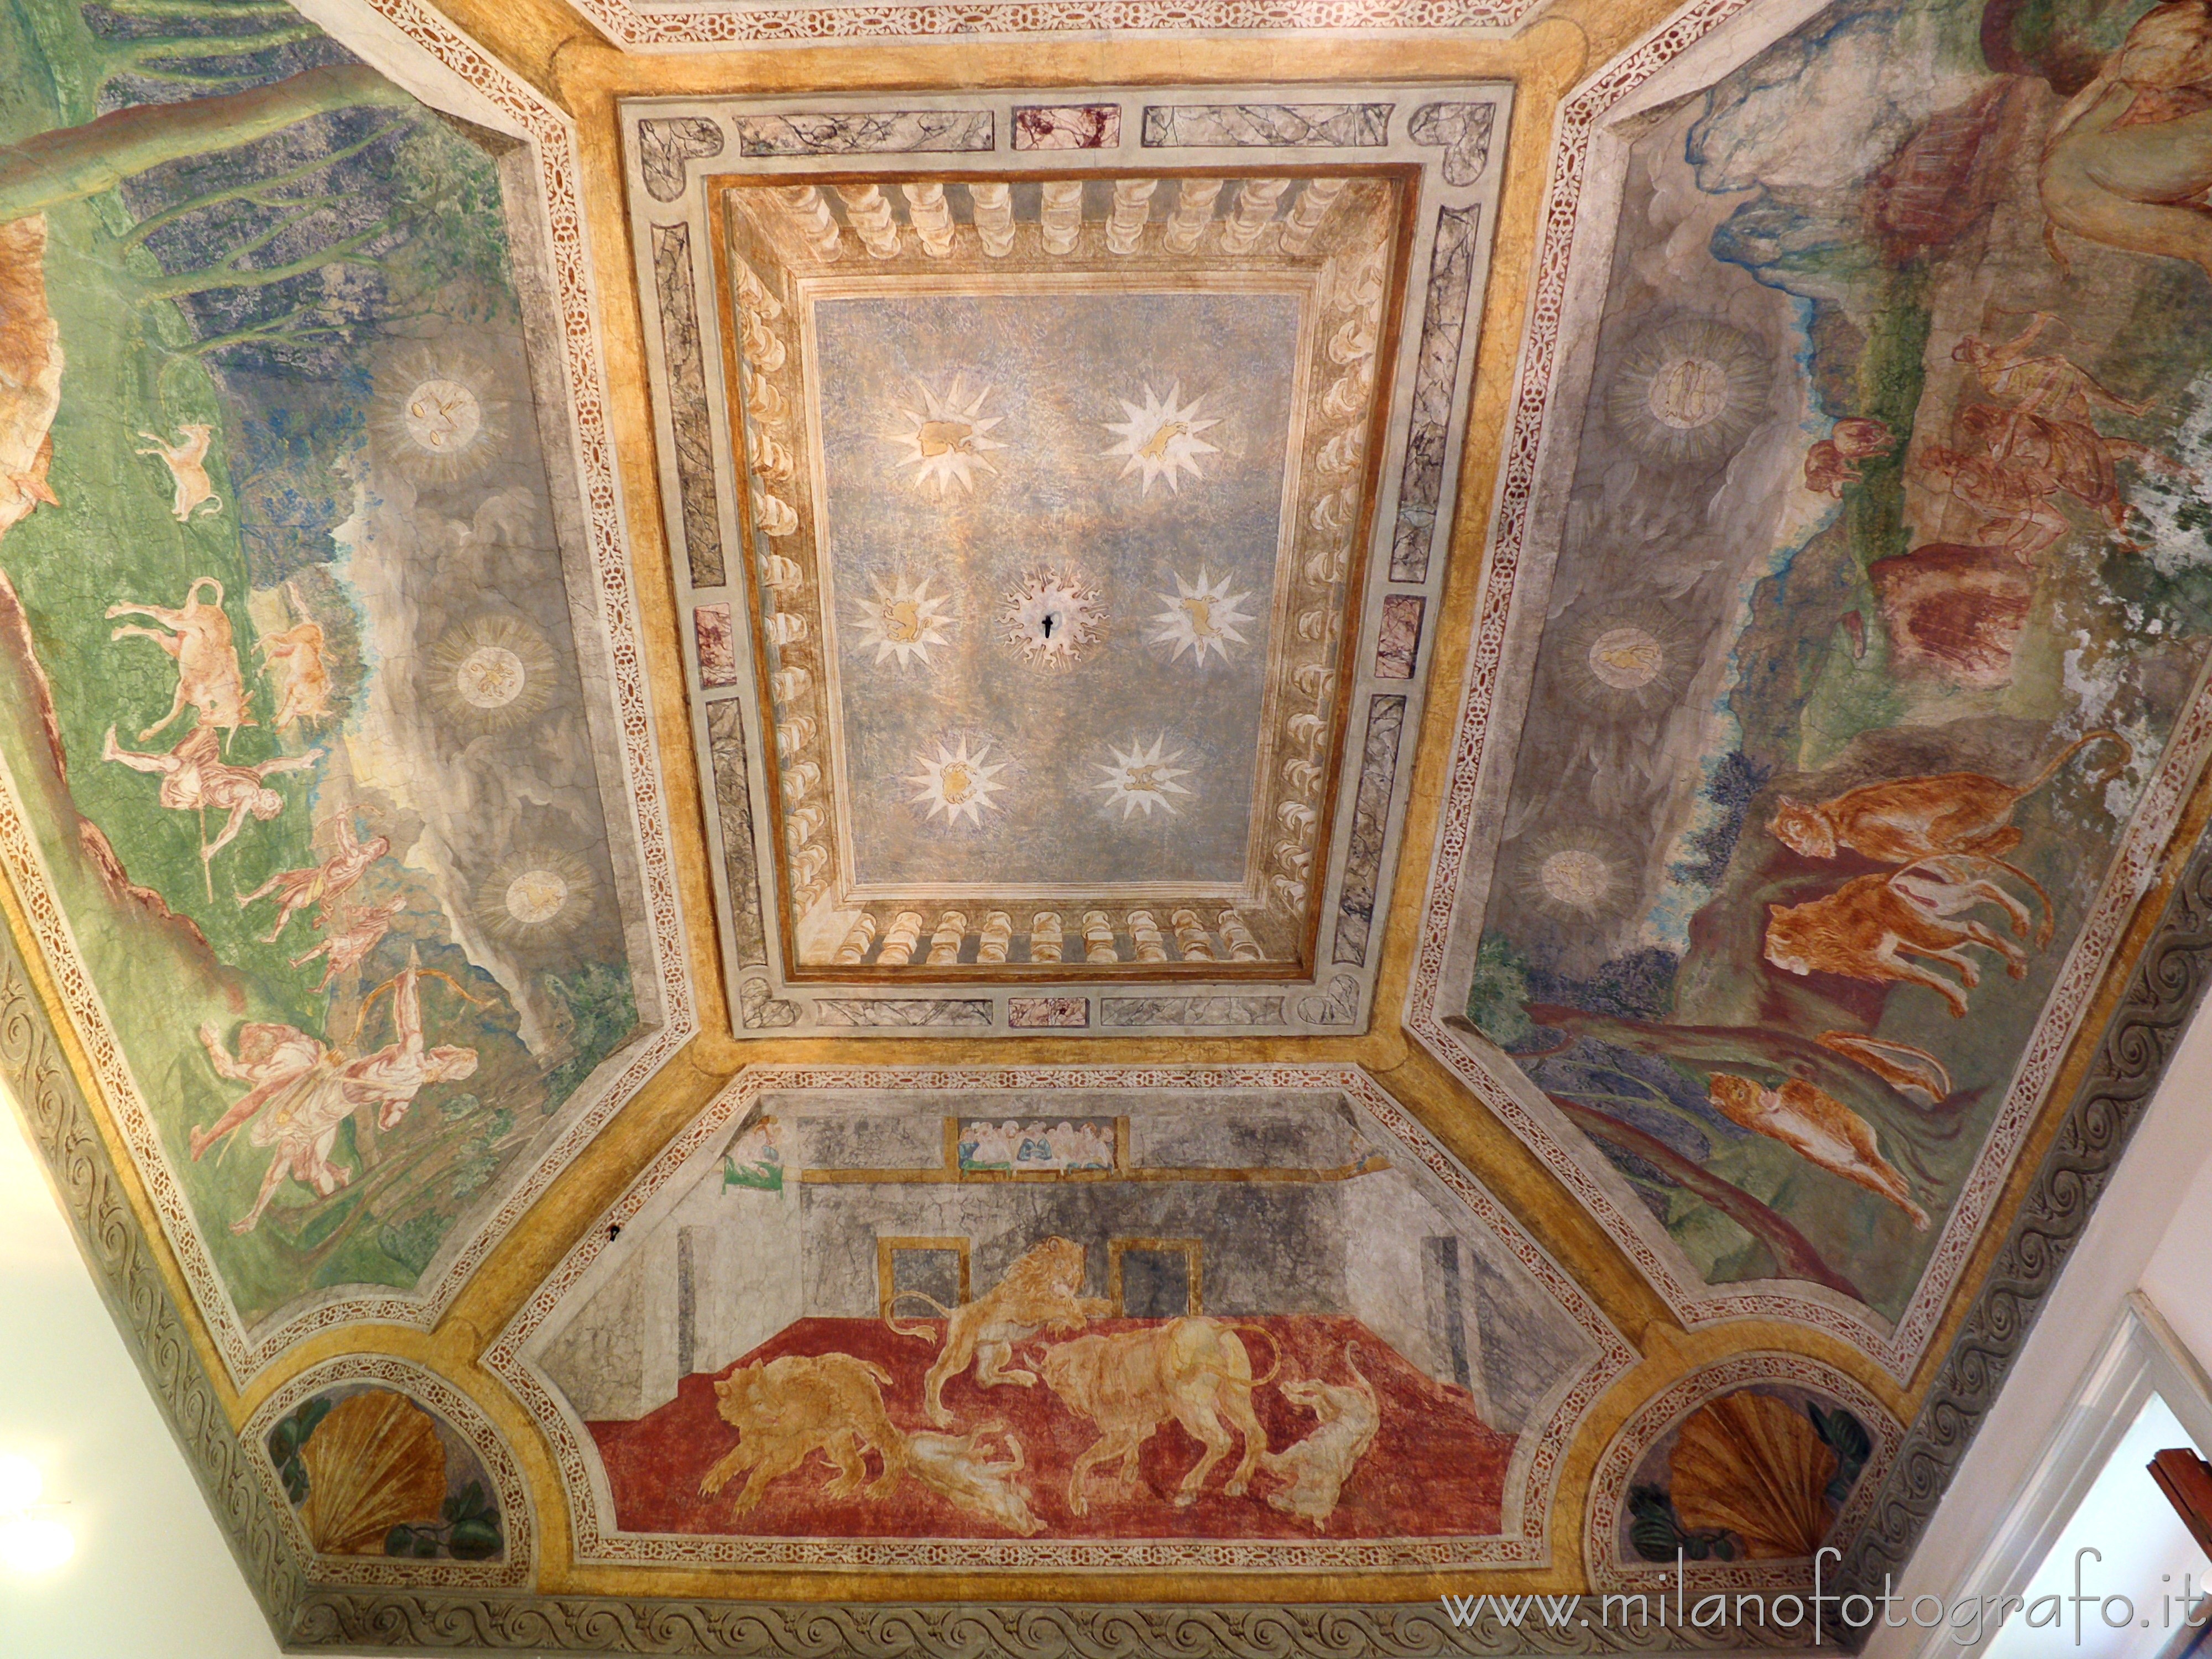 Cavenago di Brianza (Monza e Brianza, Italy): Vault of the Zodiac Hall in Palace Rasini - Cavenago di Brianza (Monza e Brianza, Italy)